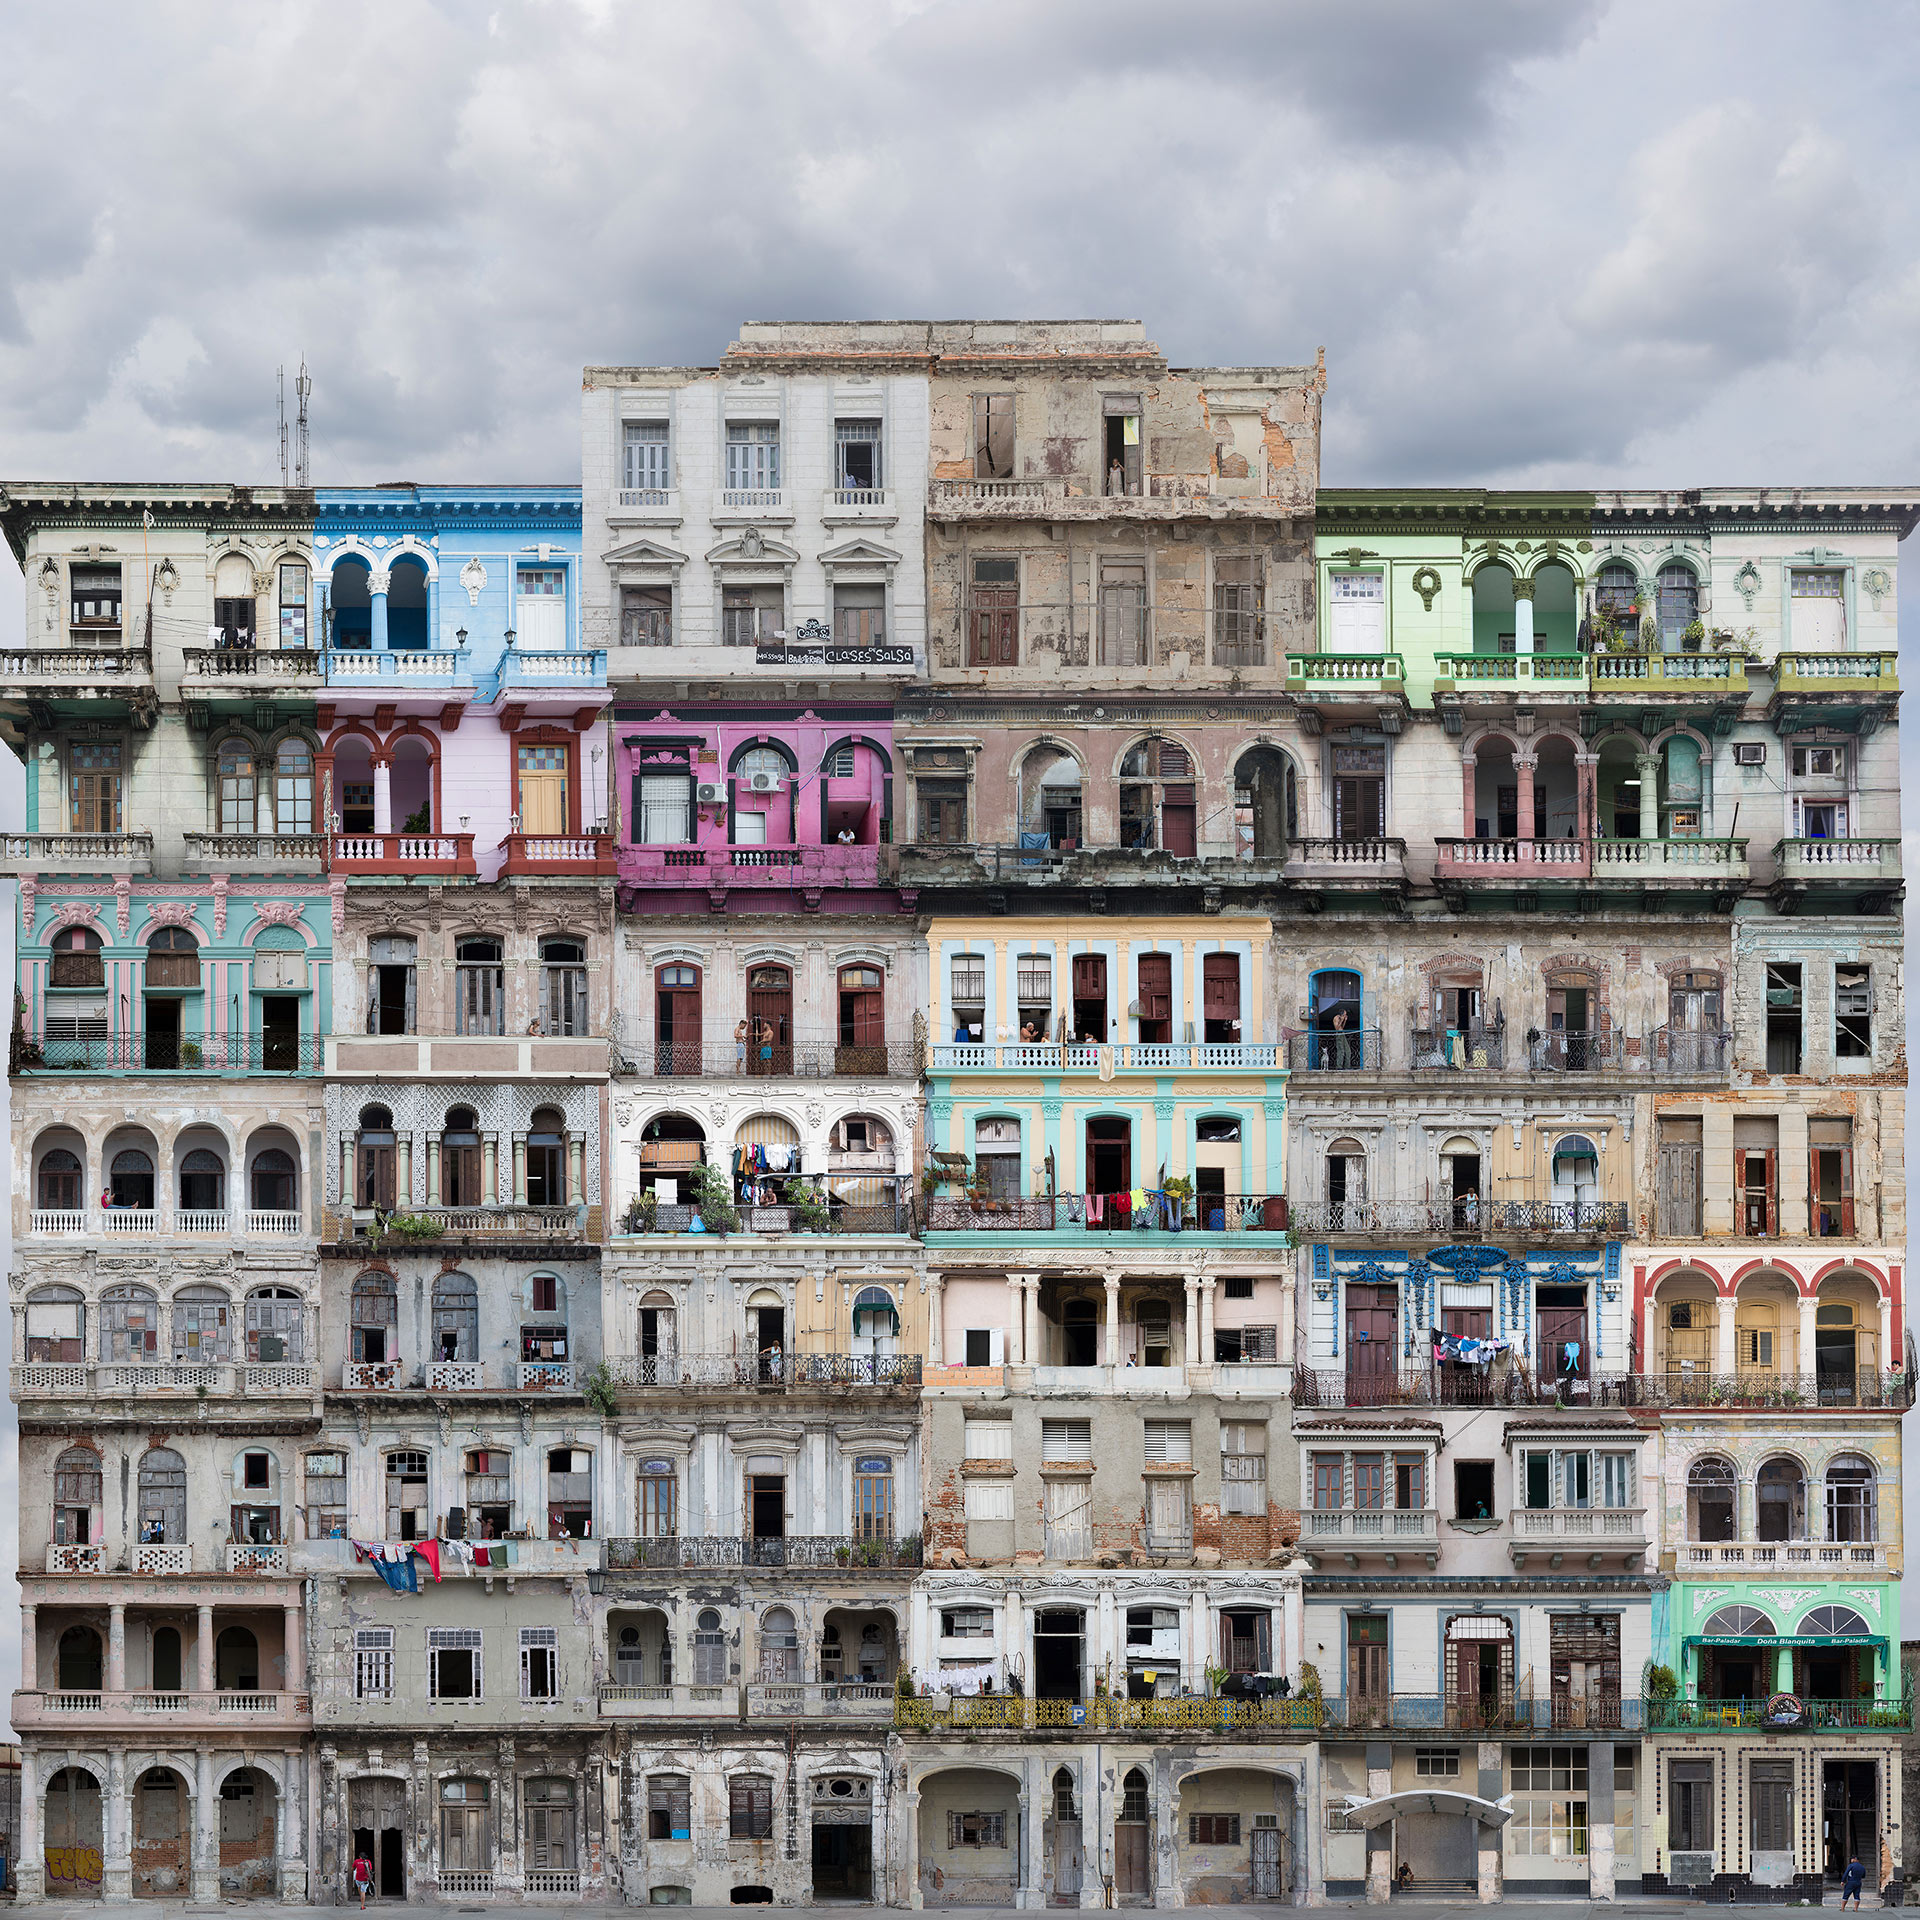 Hotel Habana by Gabriel Guerra Bianchini